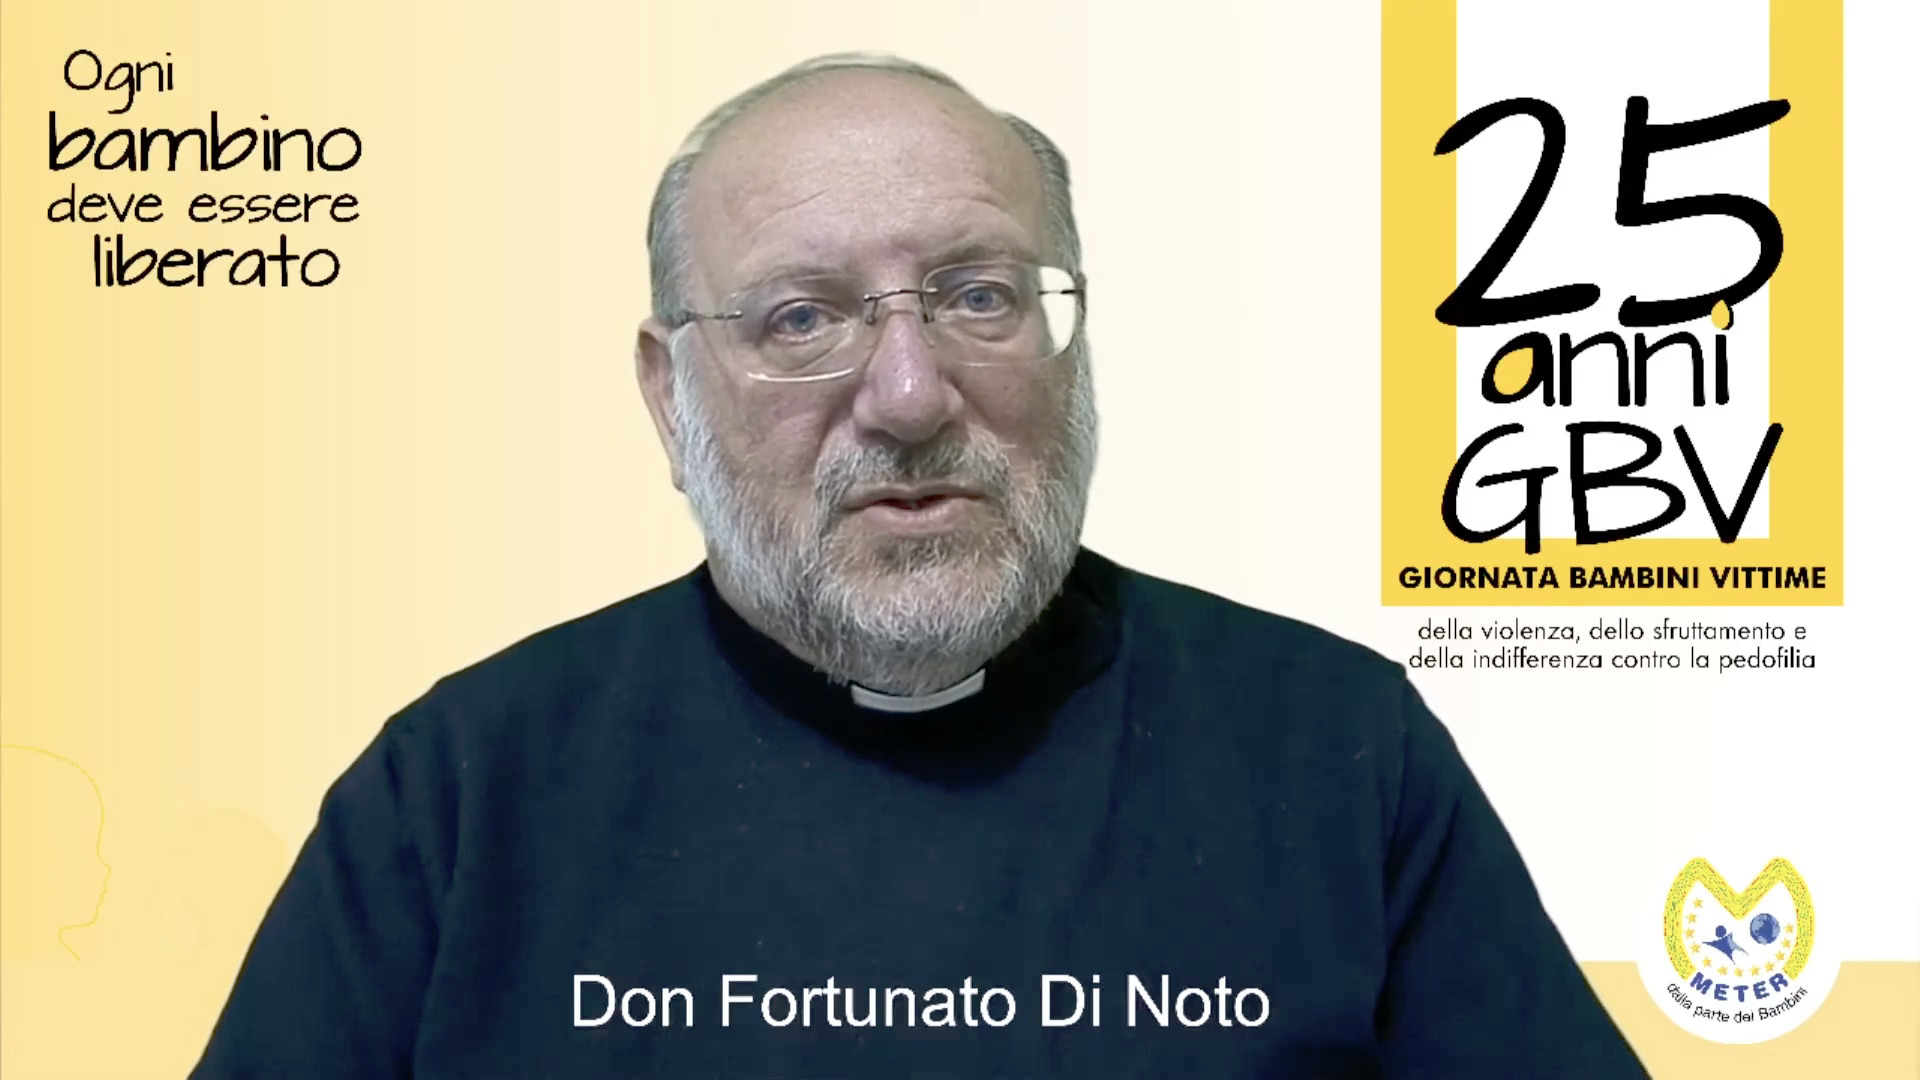 Don Fortunato Di Noto, capture @ Meter